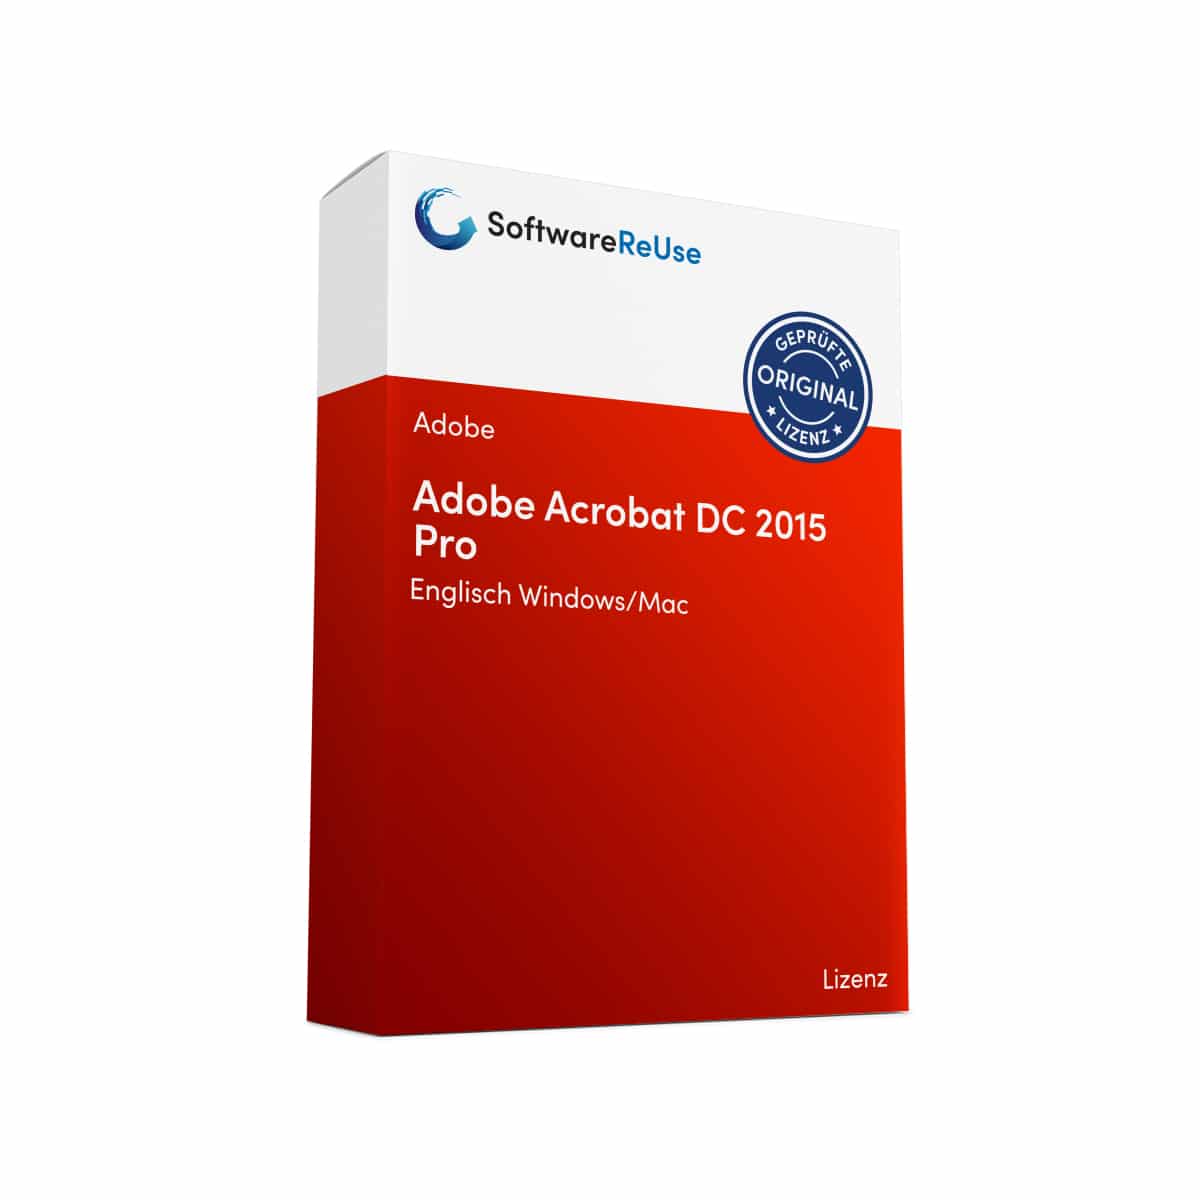 Adobe Acrobat DC 2015 Pro 2